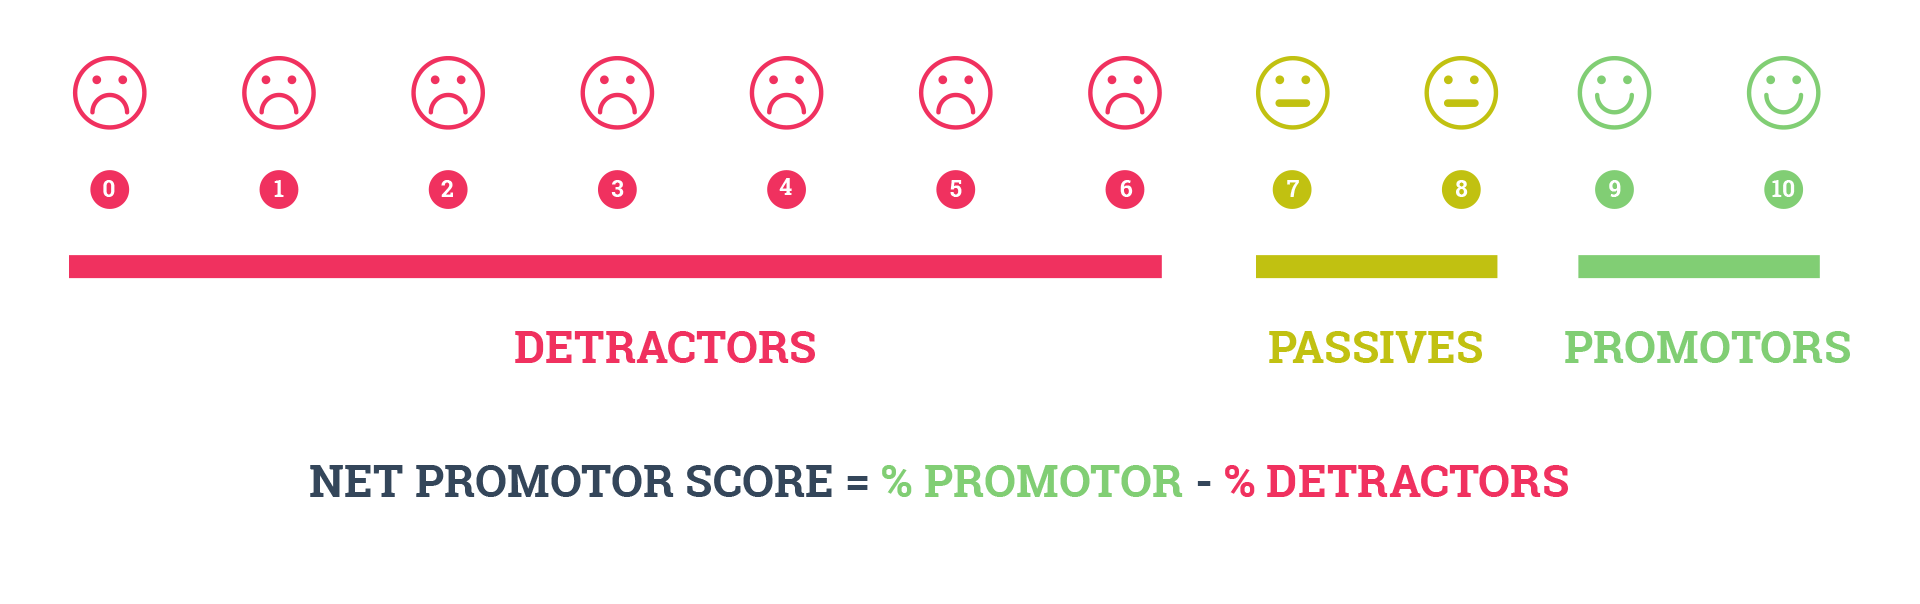 Net Promotor Score = % Promotor - & Dectractors 